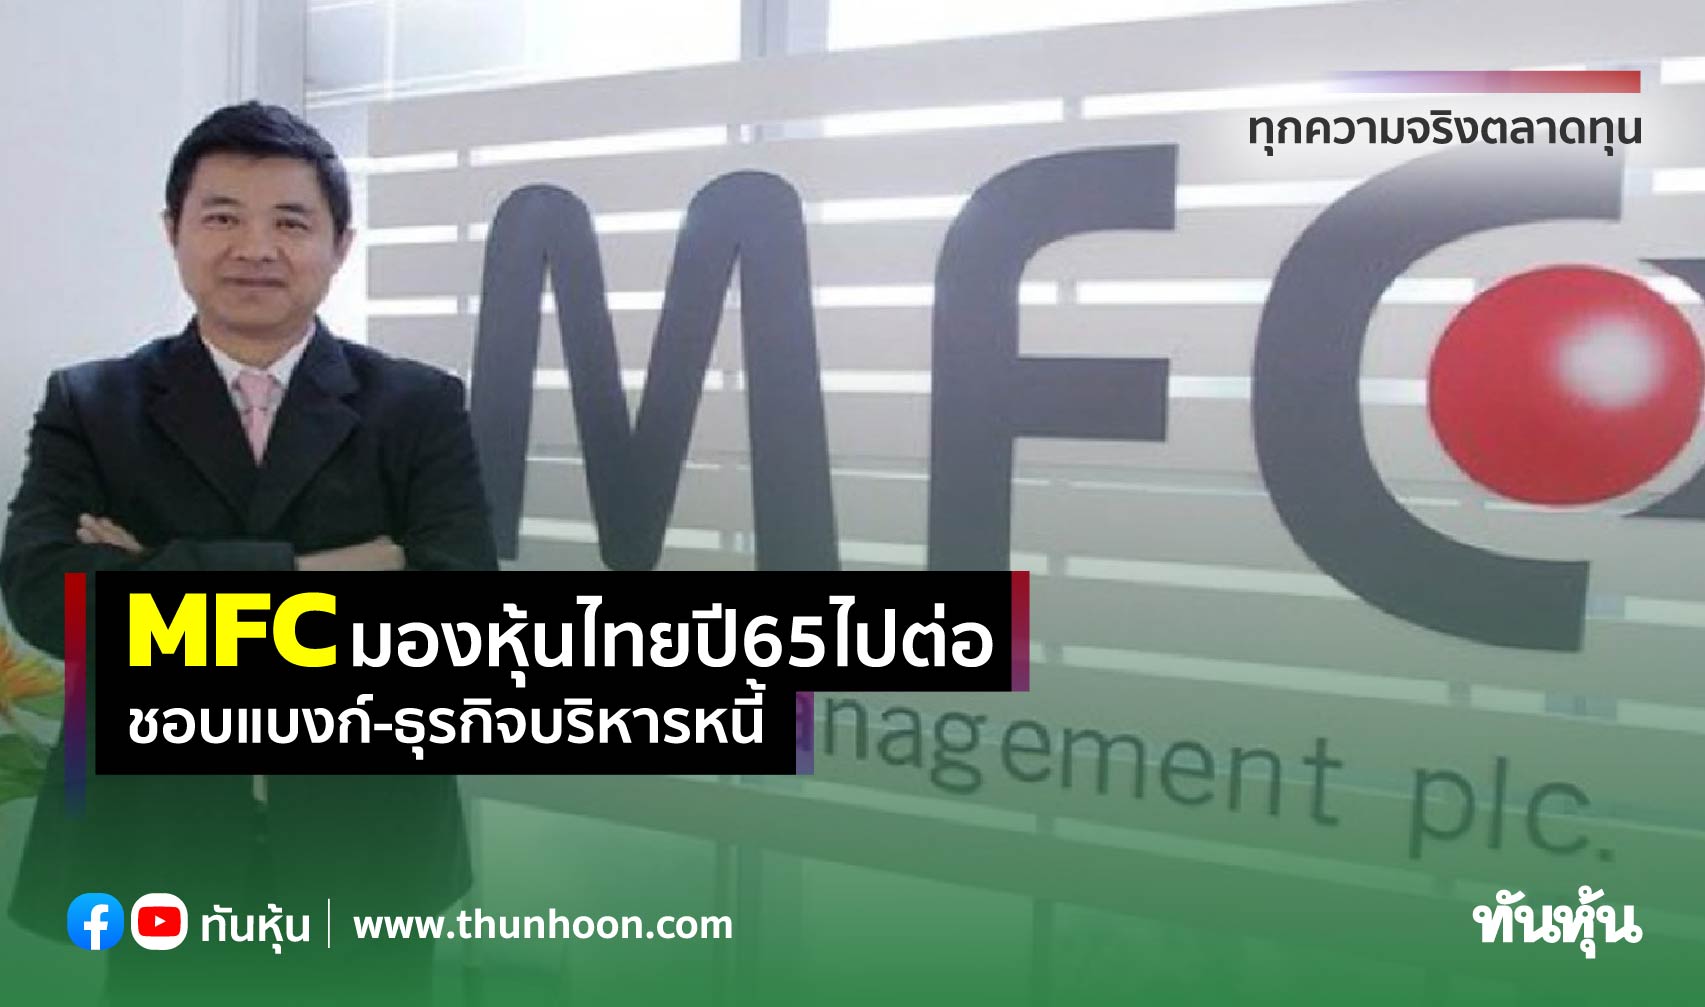 MFC มองหุ้นไทยปี65ไปต่อ ชอบแบงก์-ธุรกิจบริหารหนี้